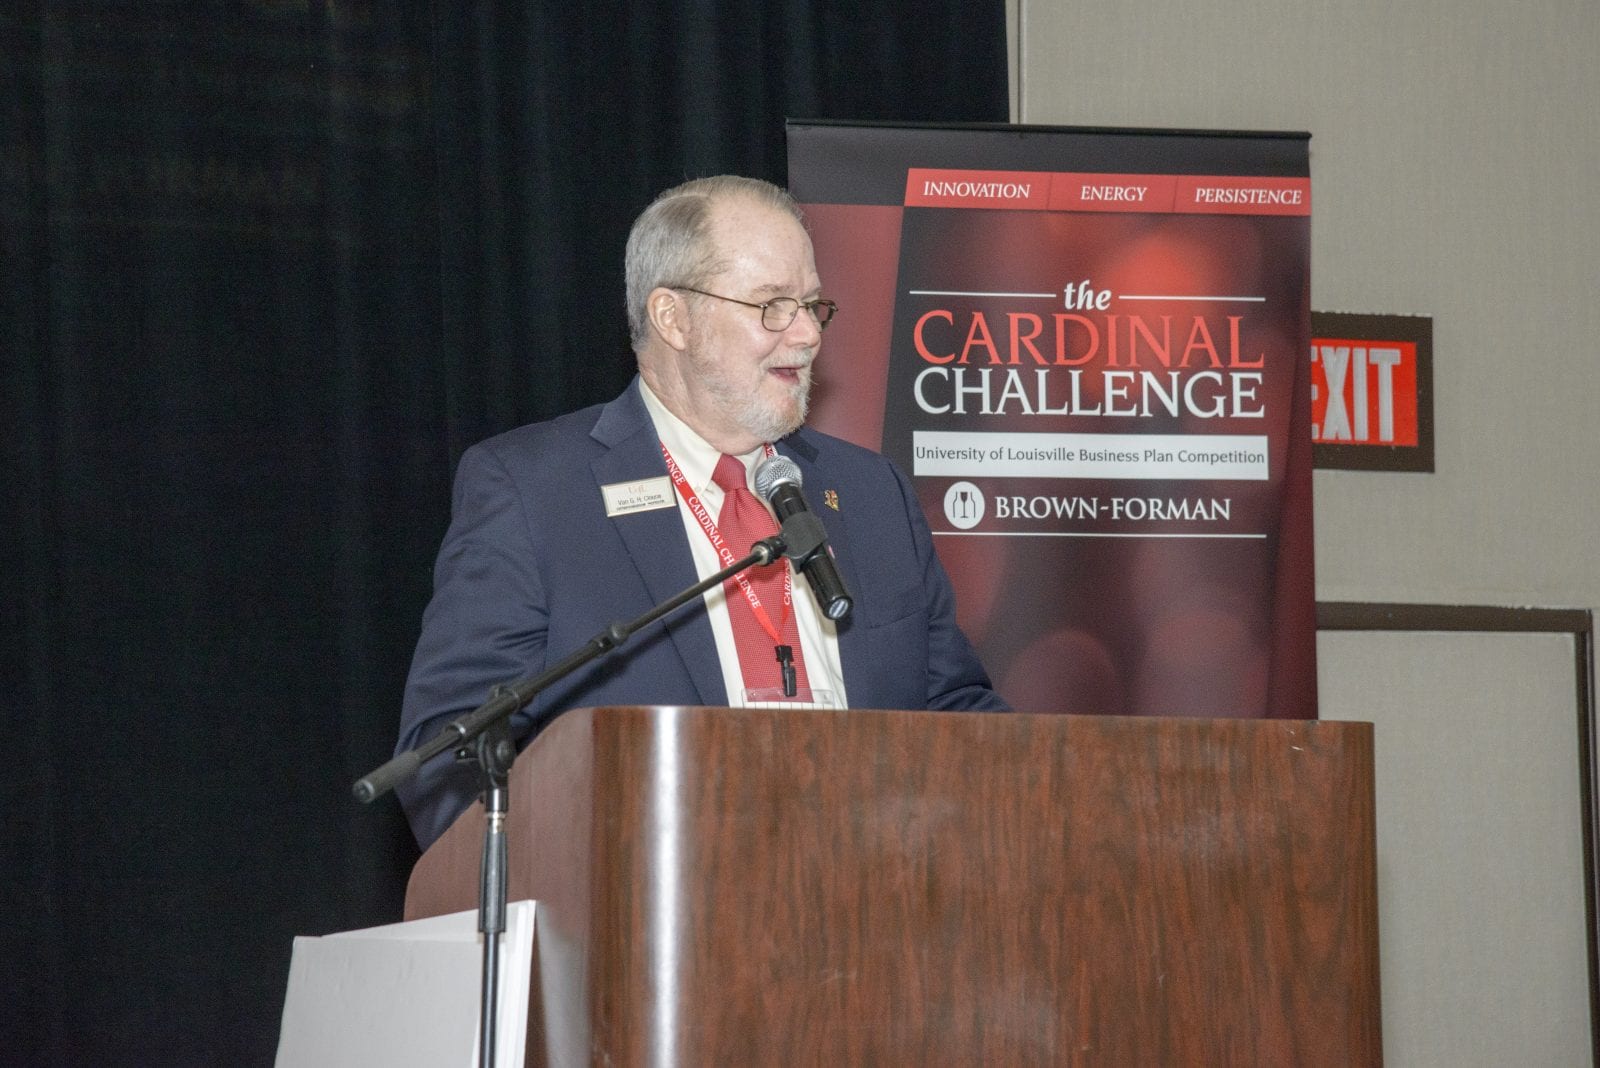 Dr. Van G. H. Clouse speaking at Cardinal Challenge podium